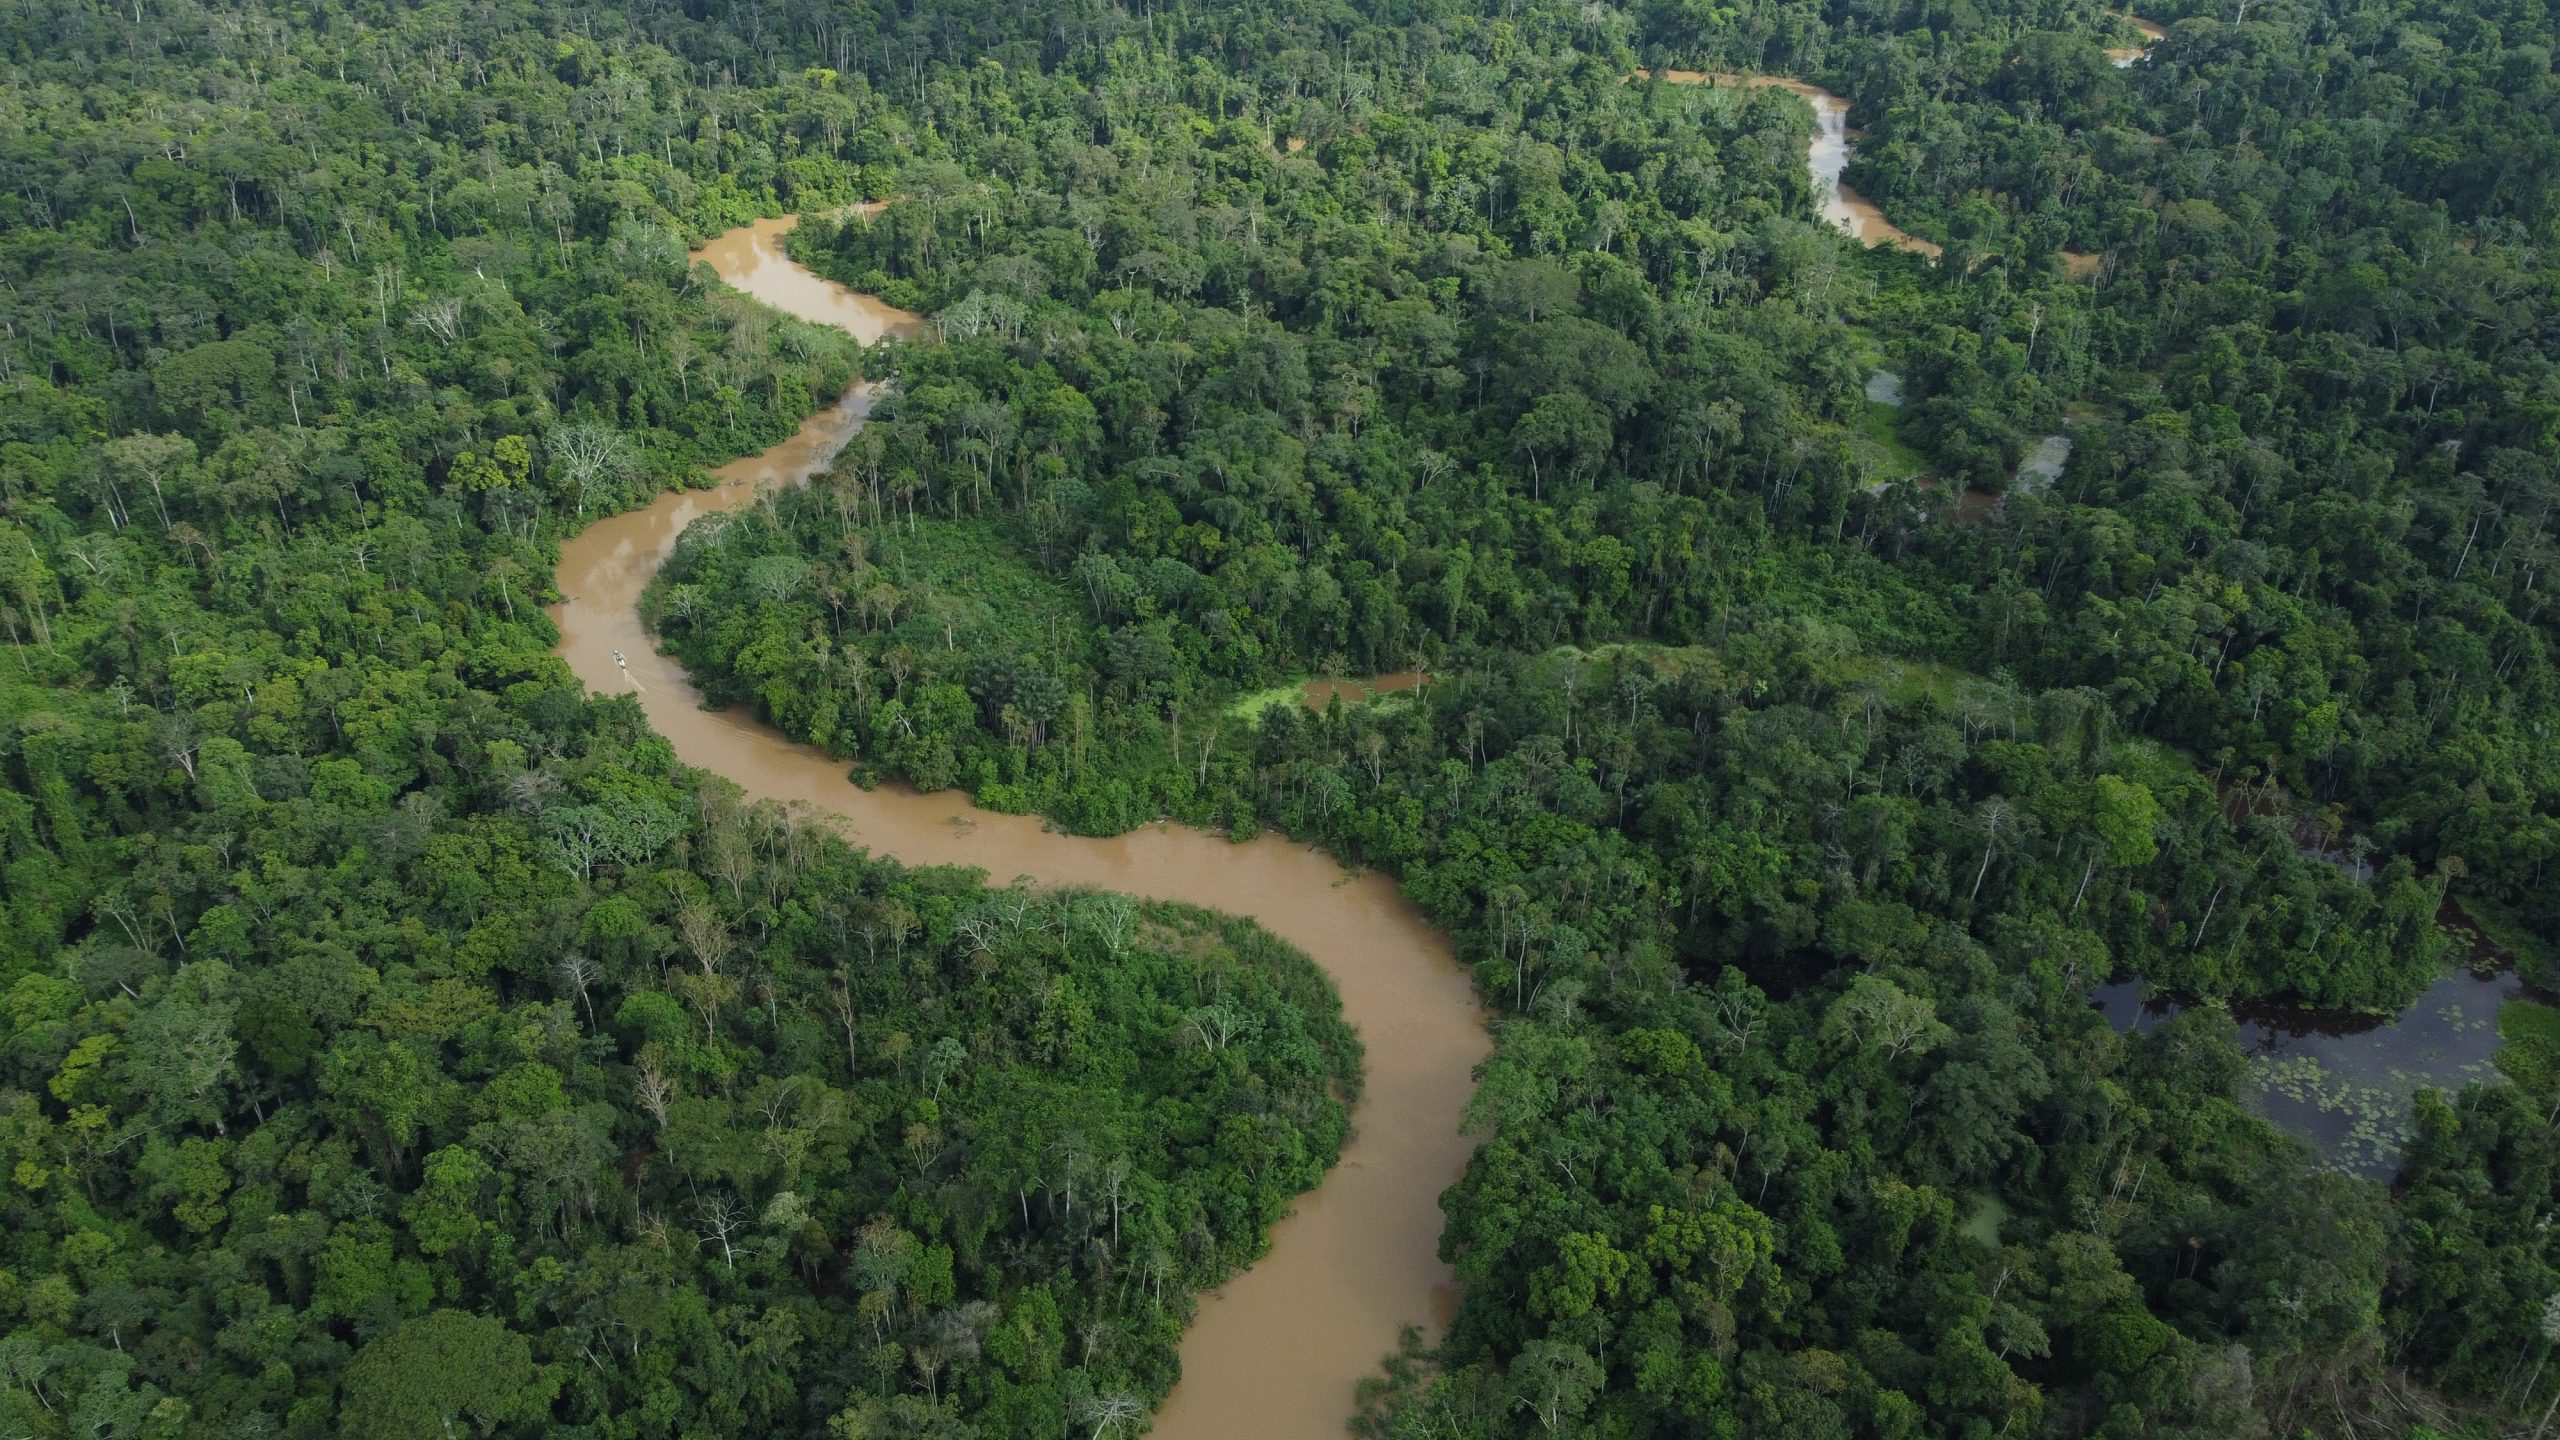 <p>El Parque Nacional Serra do Divisor, en el estado brasileño de Acre, es una de las áreas con mayor biodiversidad del planeta, pero su naturaleza y comunidades enfrentan amenazas por un proyecto de ampliación de la carretera que conectaría Brasil y Perú (Imagen: Ramon Aquim)</p>